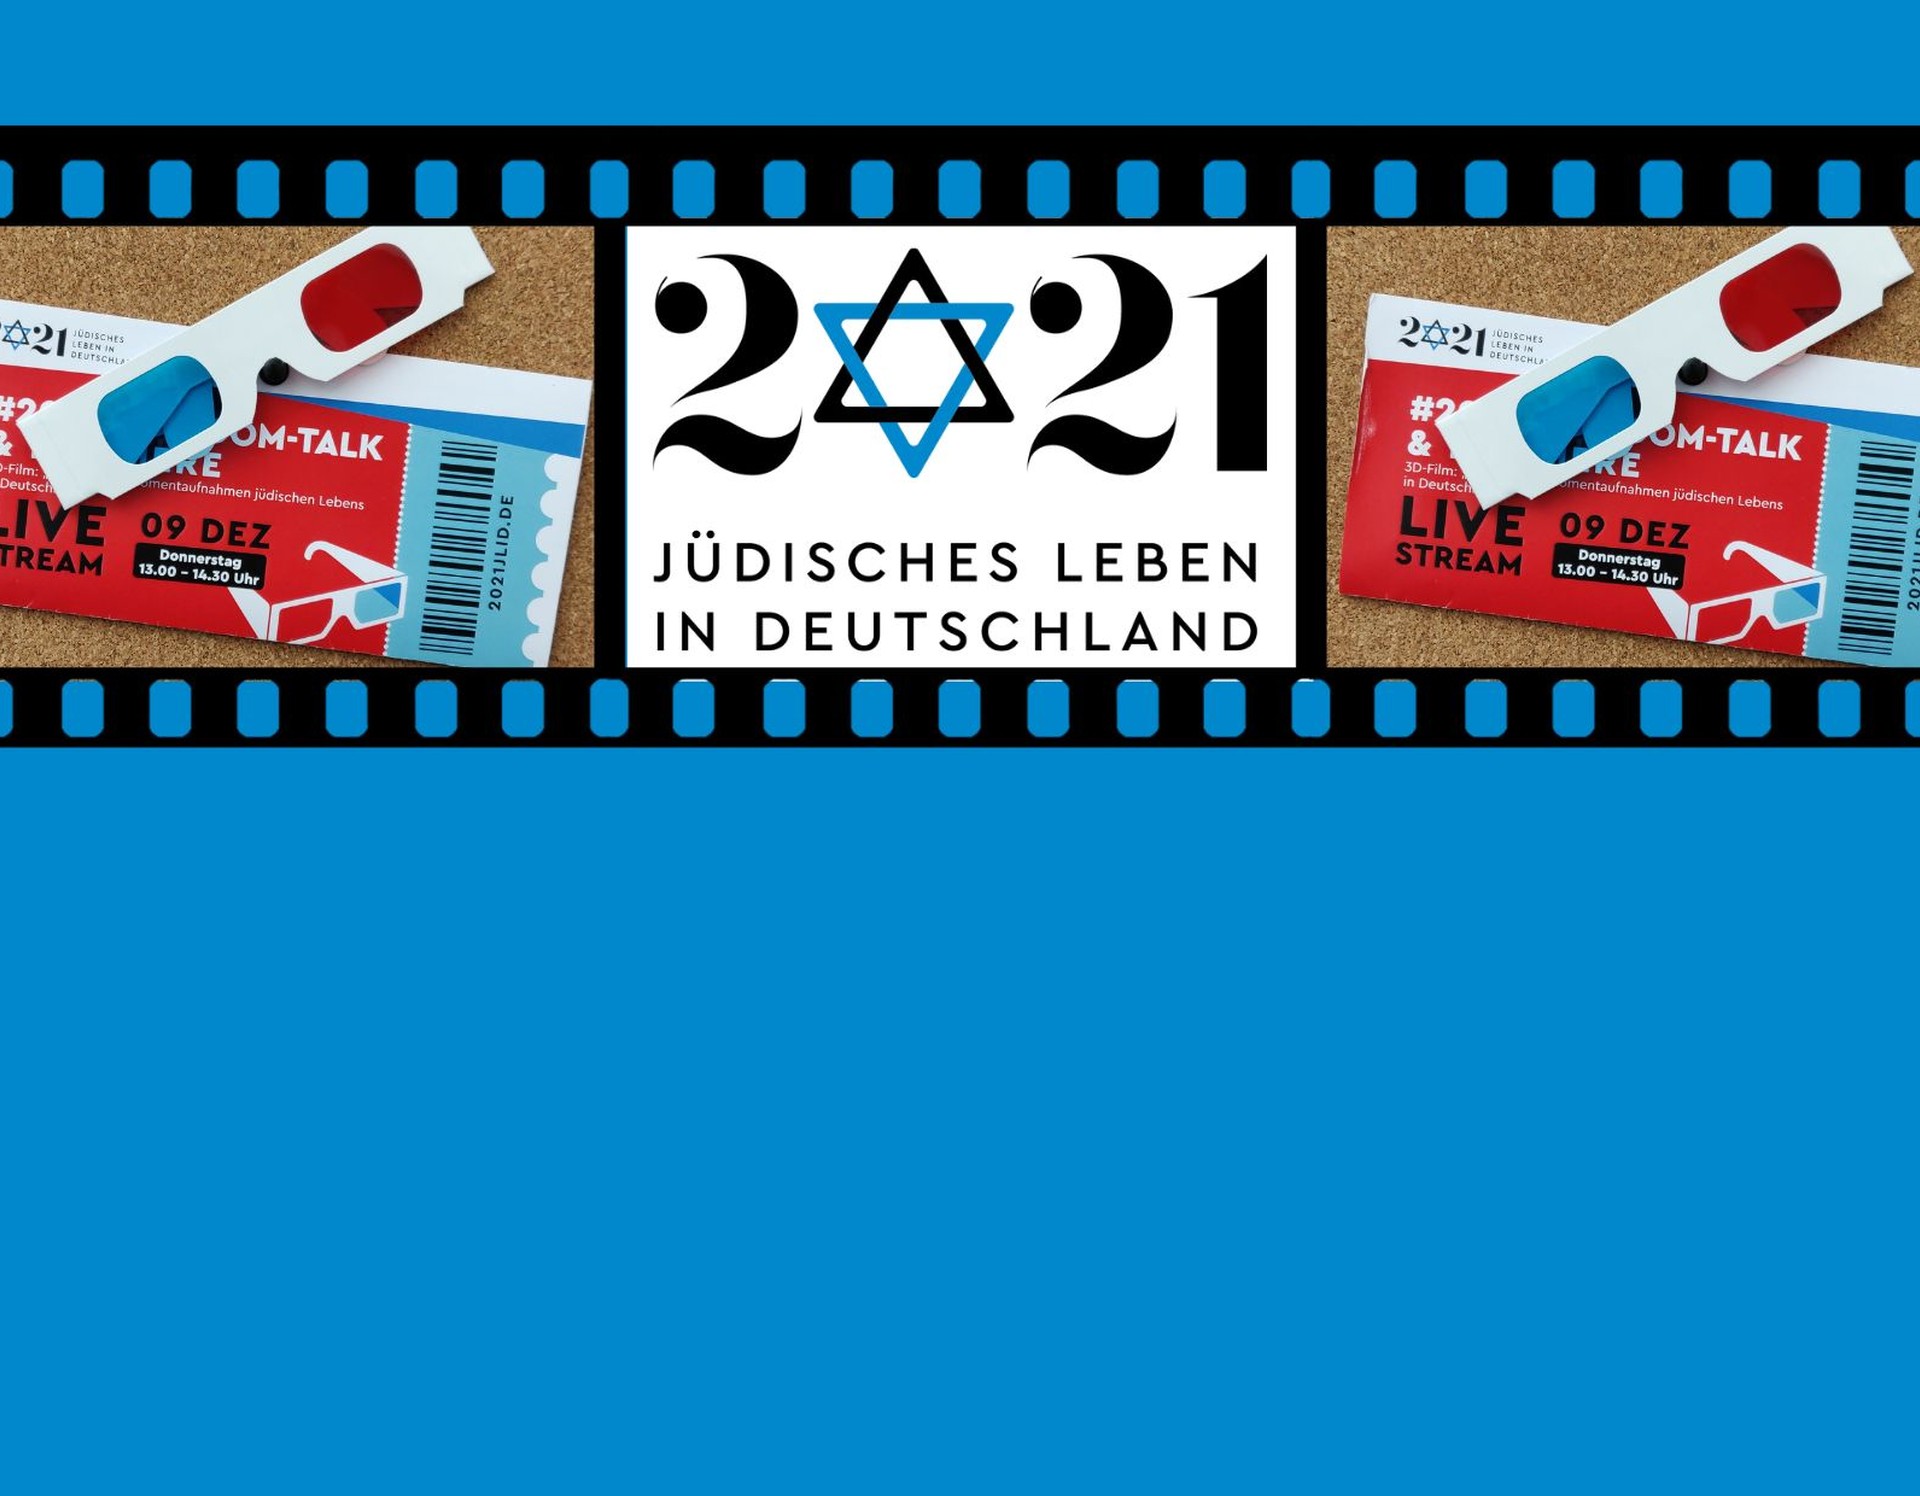 Ein Filmstreifen mit dem Logo des Vereins "2021 Jüdisches Leben in Deutschland"